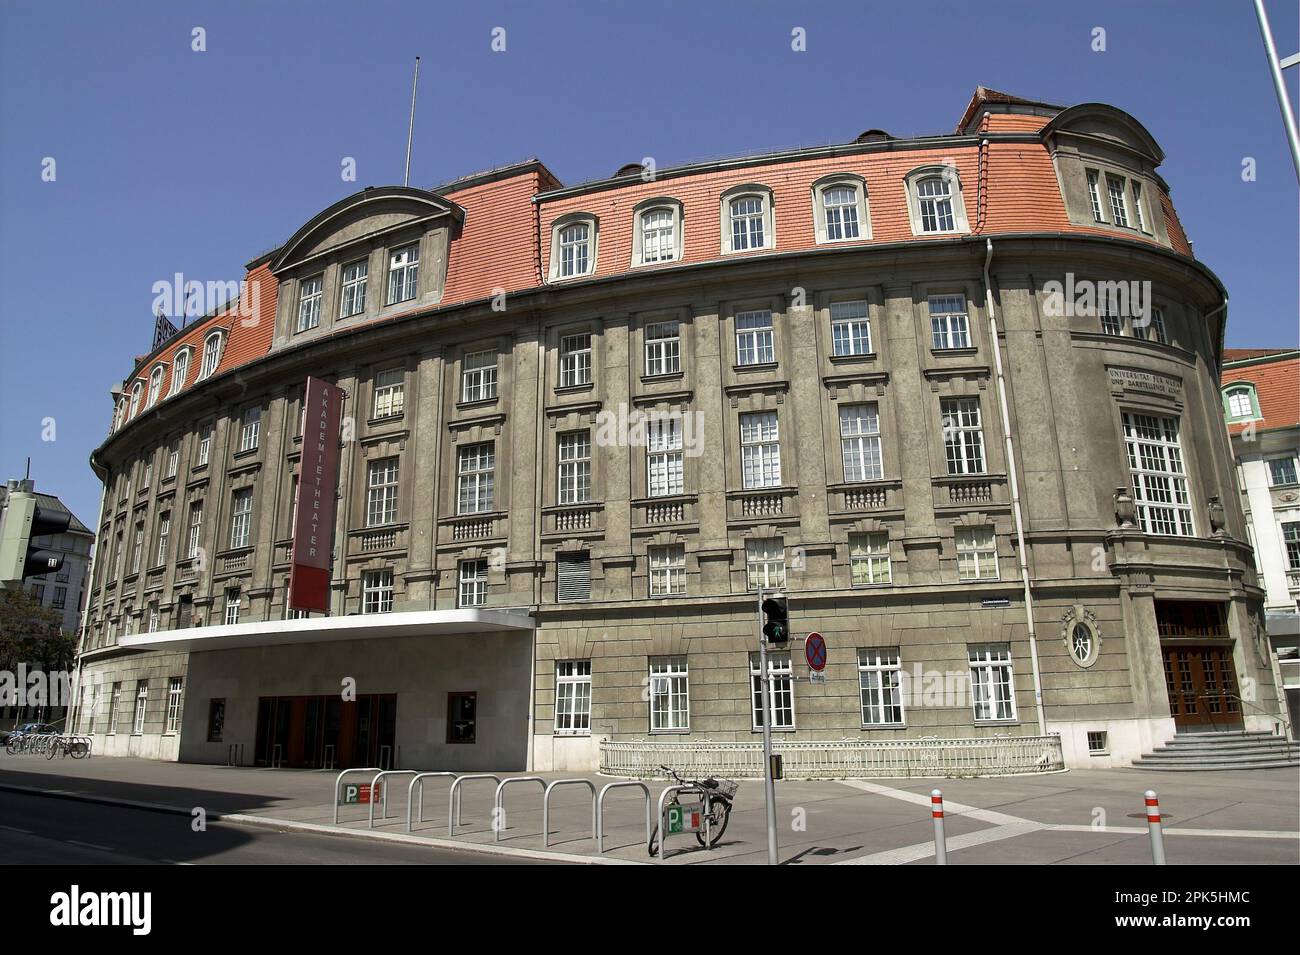 Wiedeń, Wien, Vienna, Austria, Akademietheater; Universität für Musik und darstellende Kunst; University of Music and Performing Arts Stock Photo